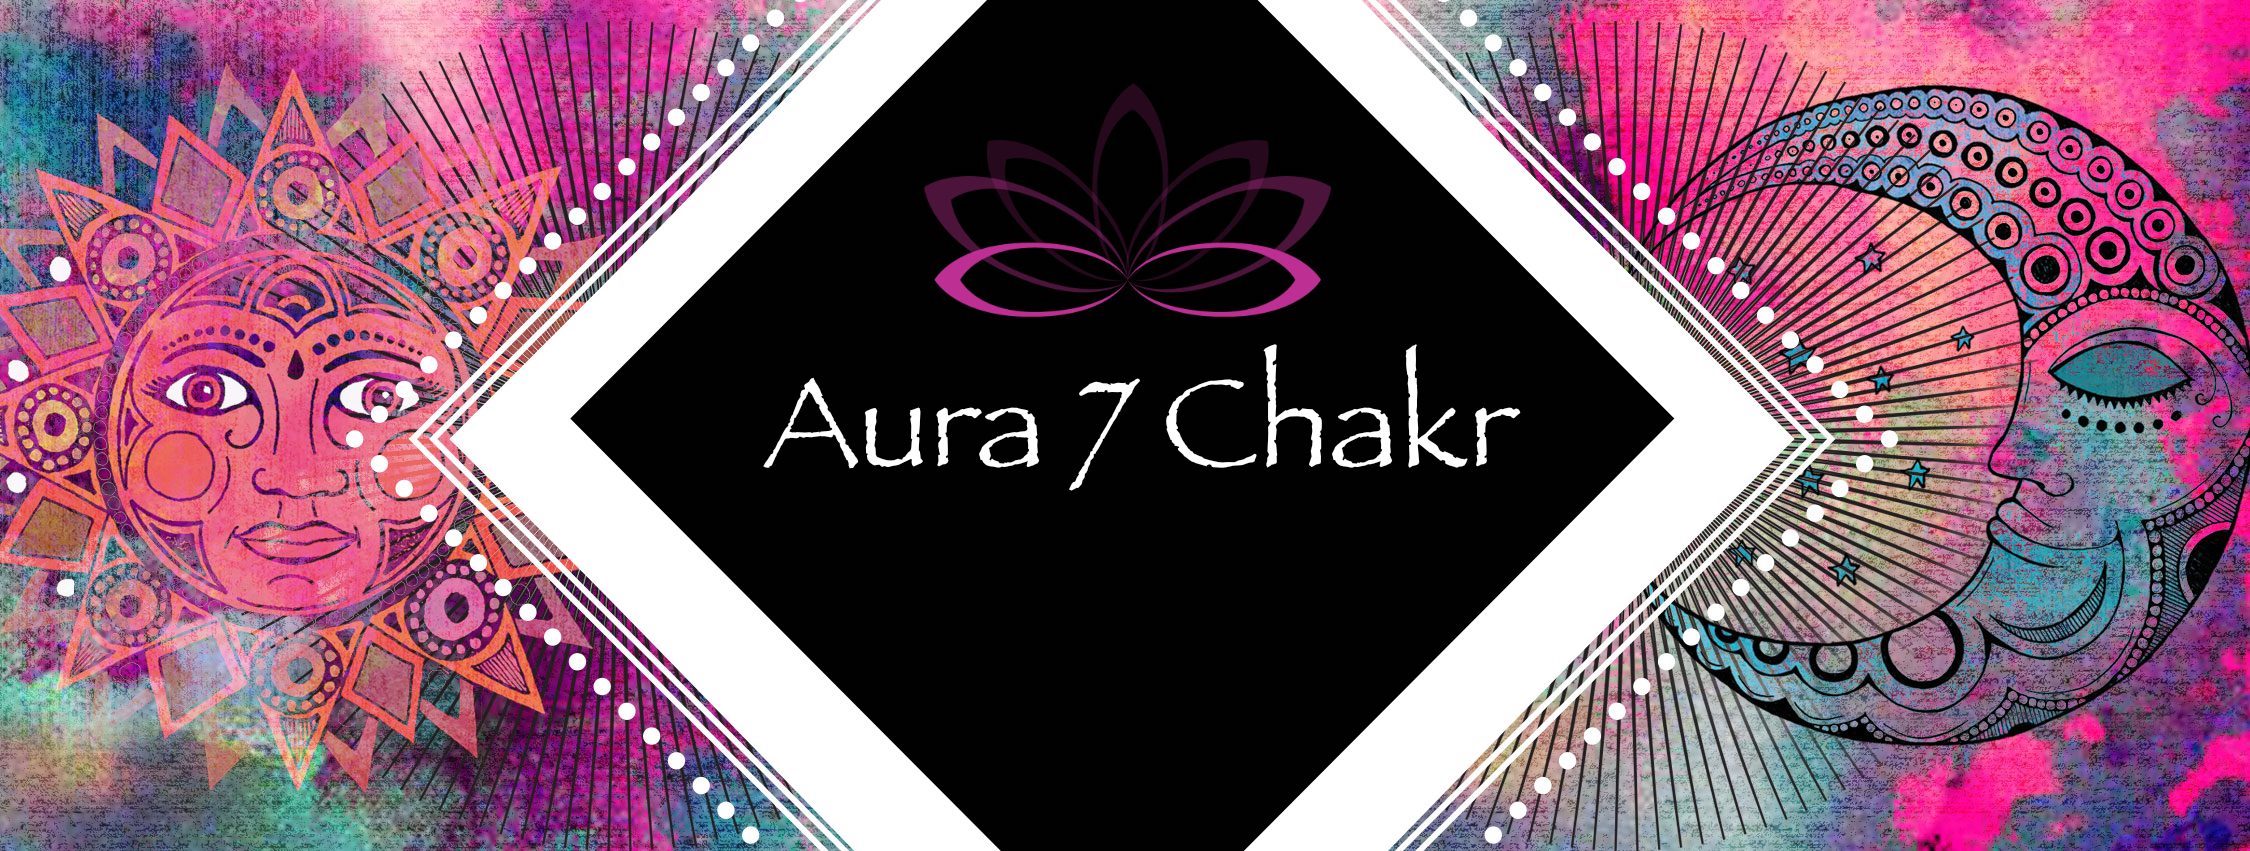 Aura 7 Chakr